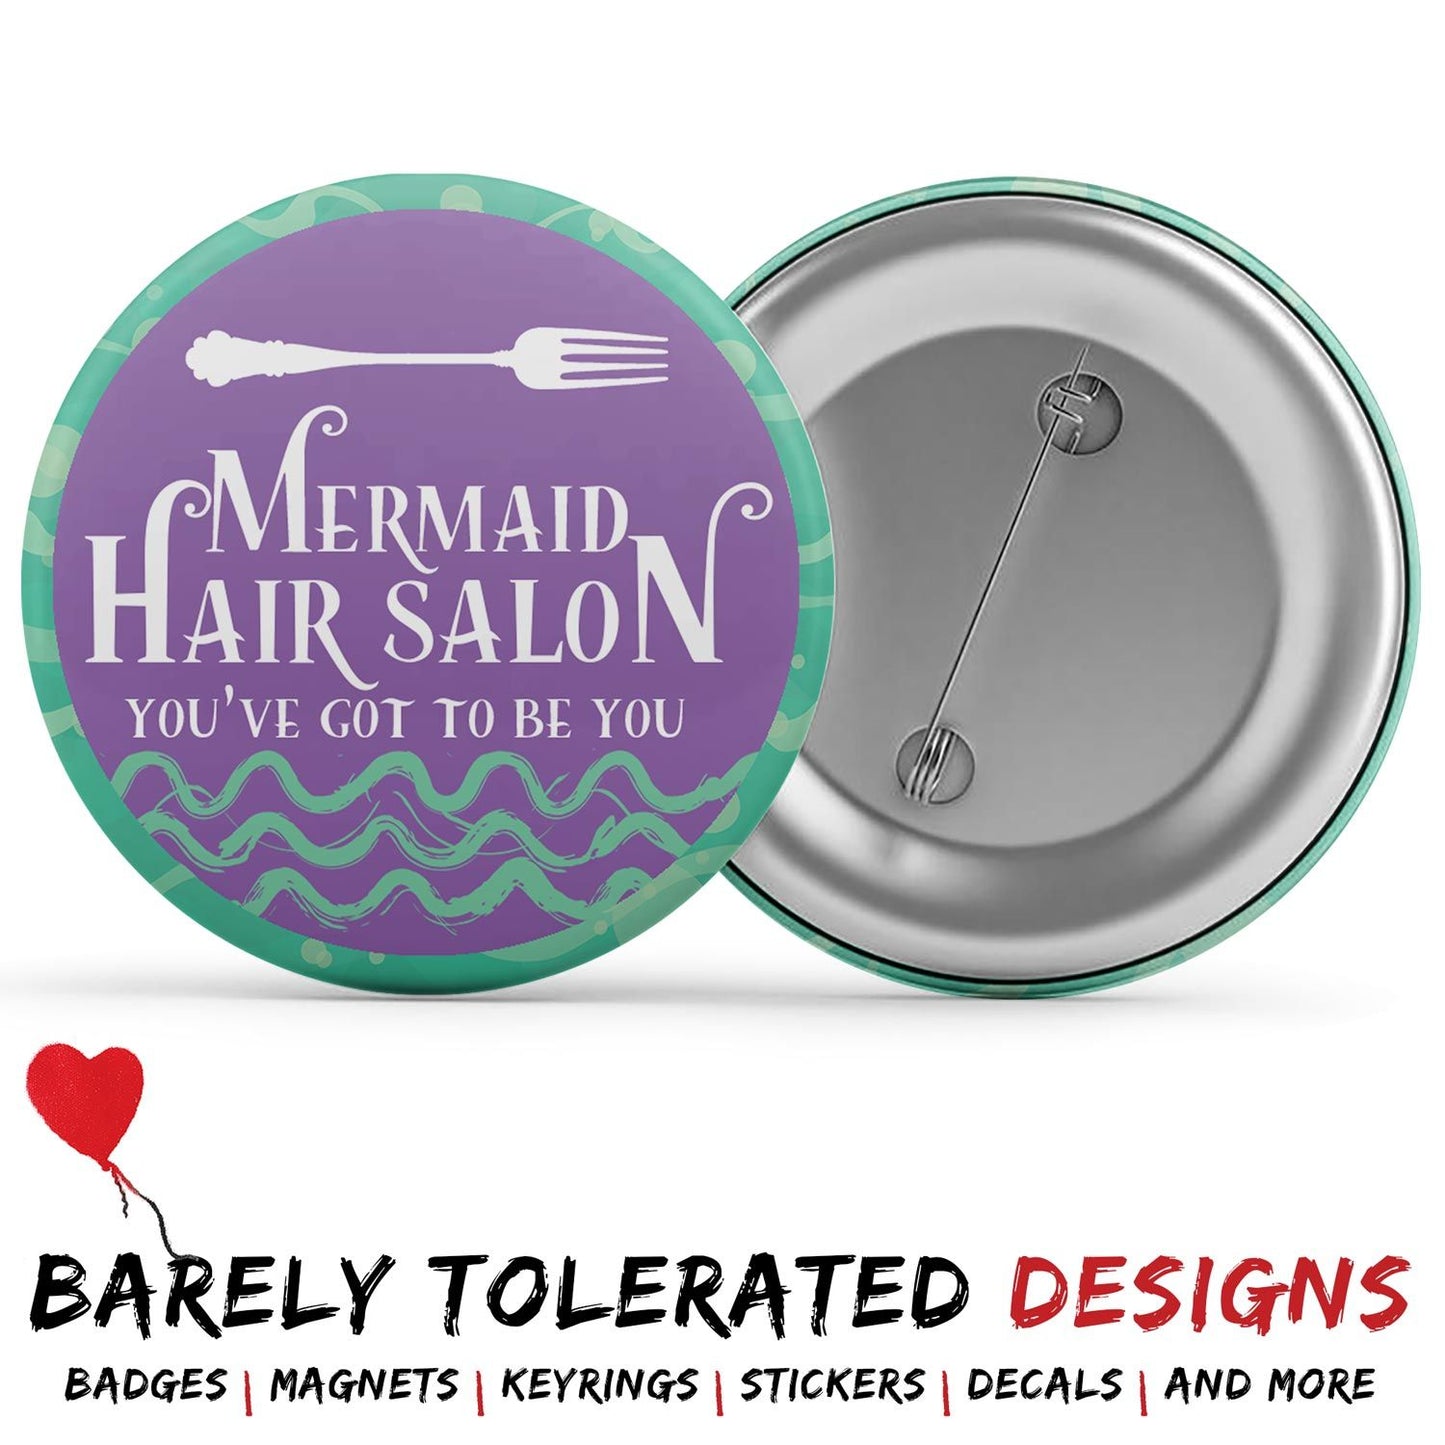 Mermaid Hair Salon Image